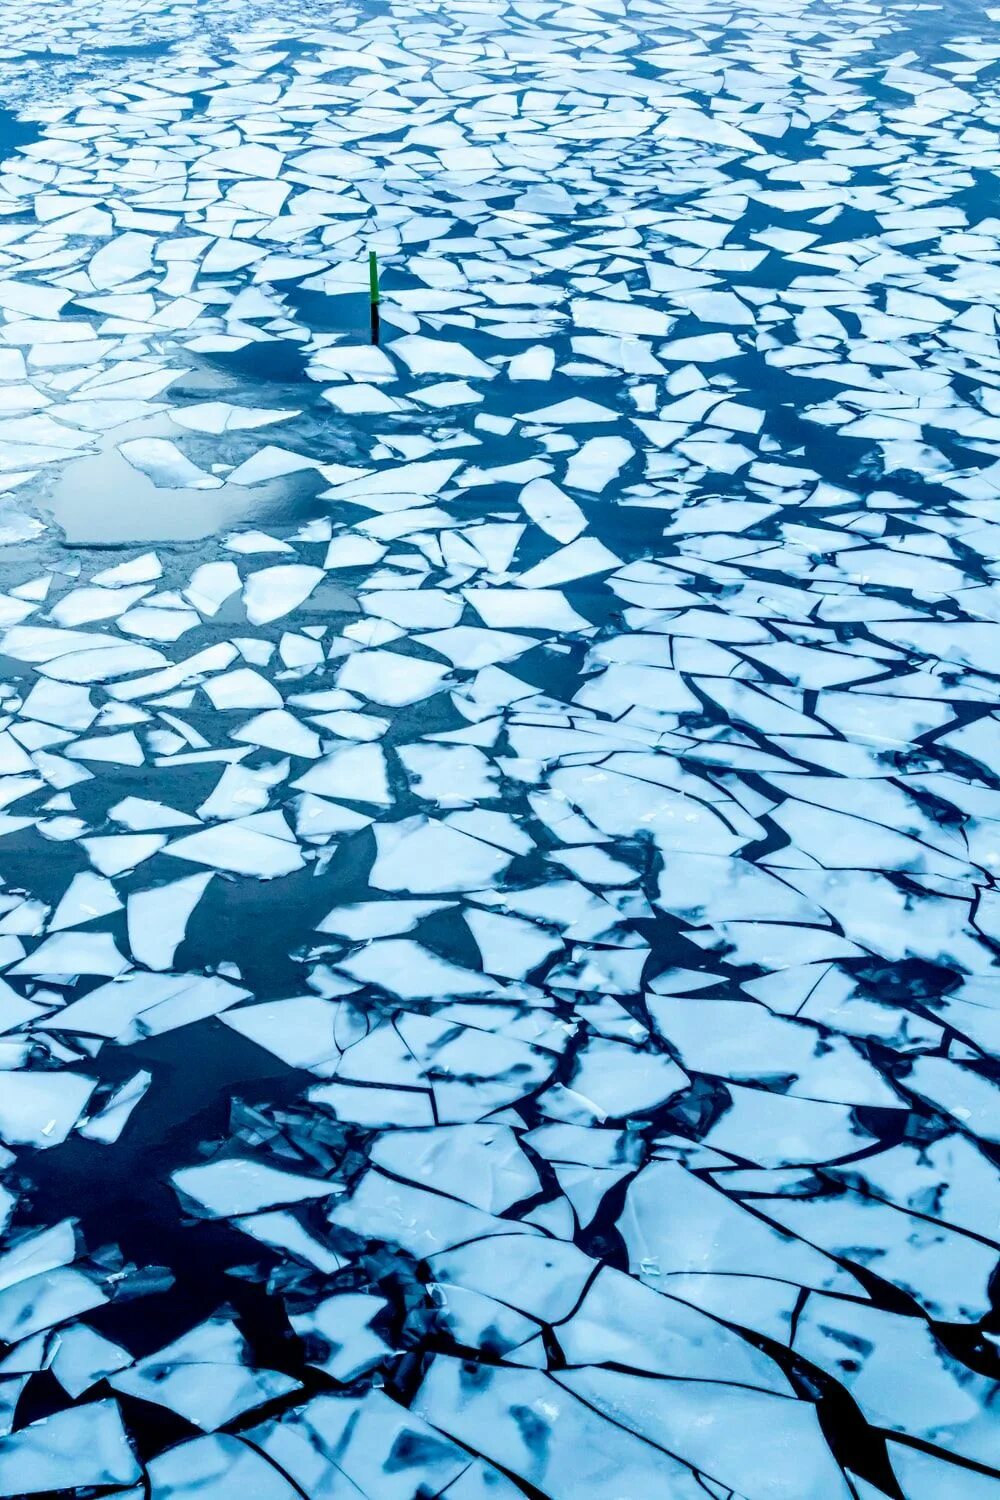 Мелкий лед на воде 4. Лед. Треснувший лед. Вода со льдом. Лед трескается.